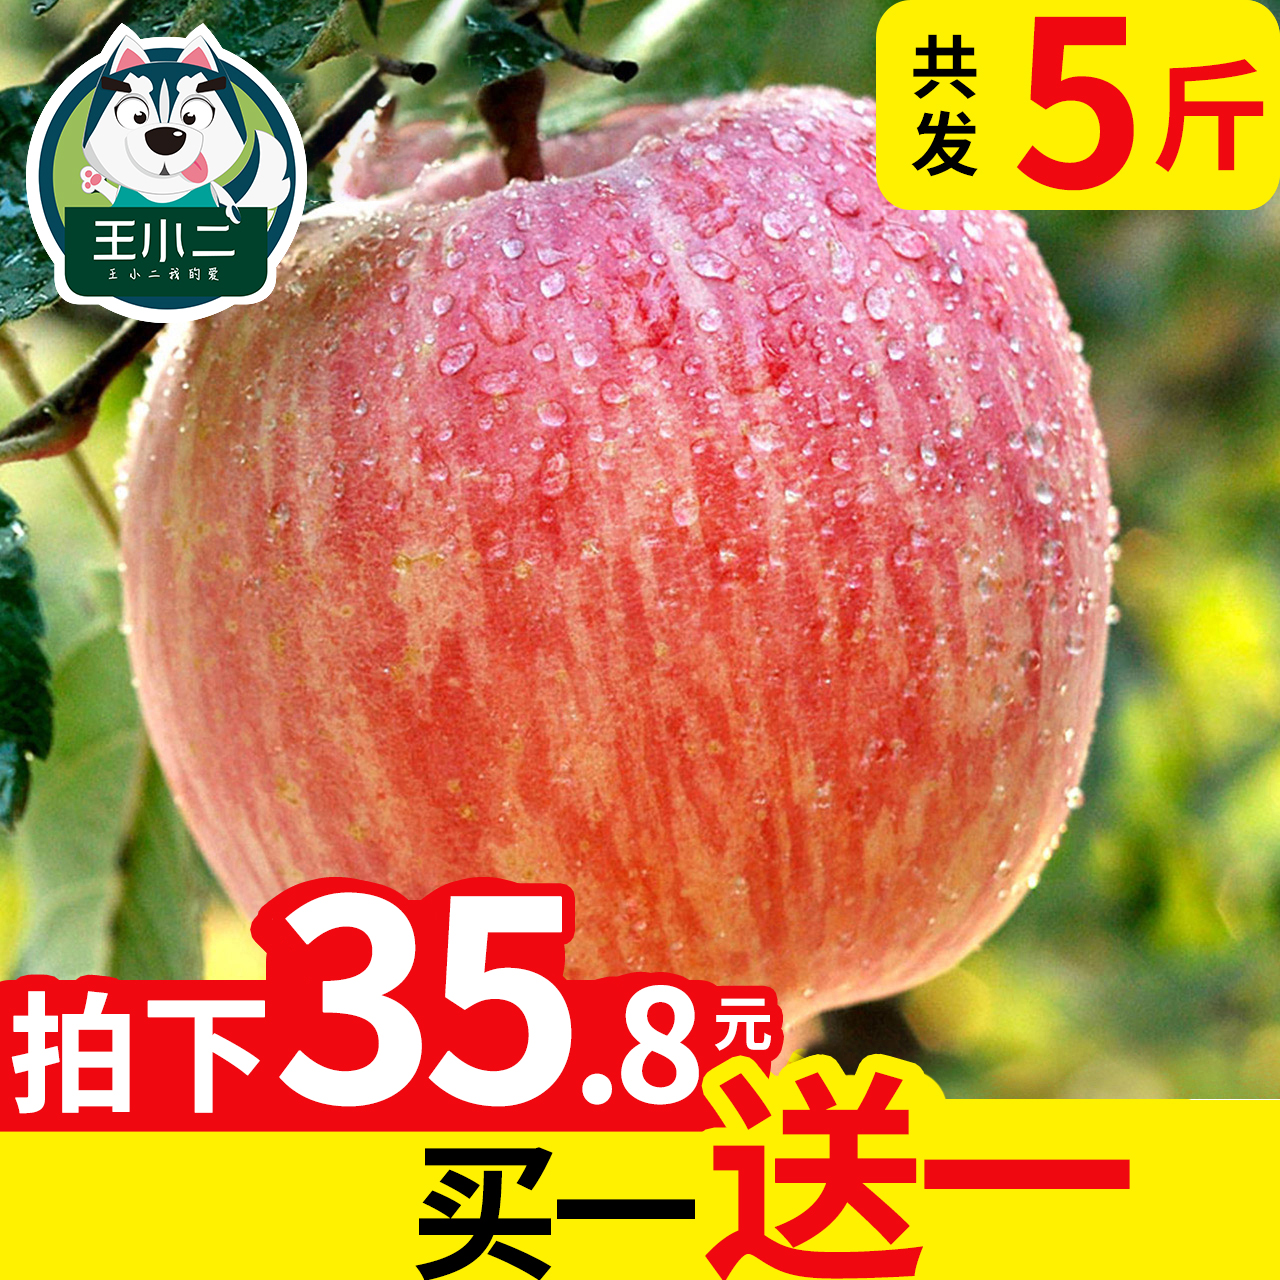 【买一送一】山东烟台苹果水果包邮当季新鲜萍平果吃的栖霞红富士